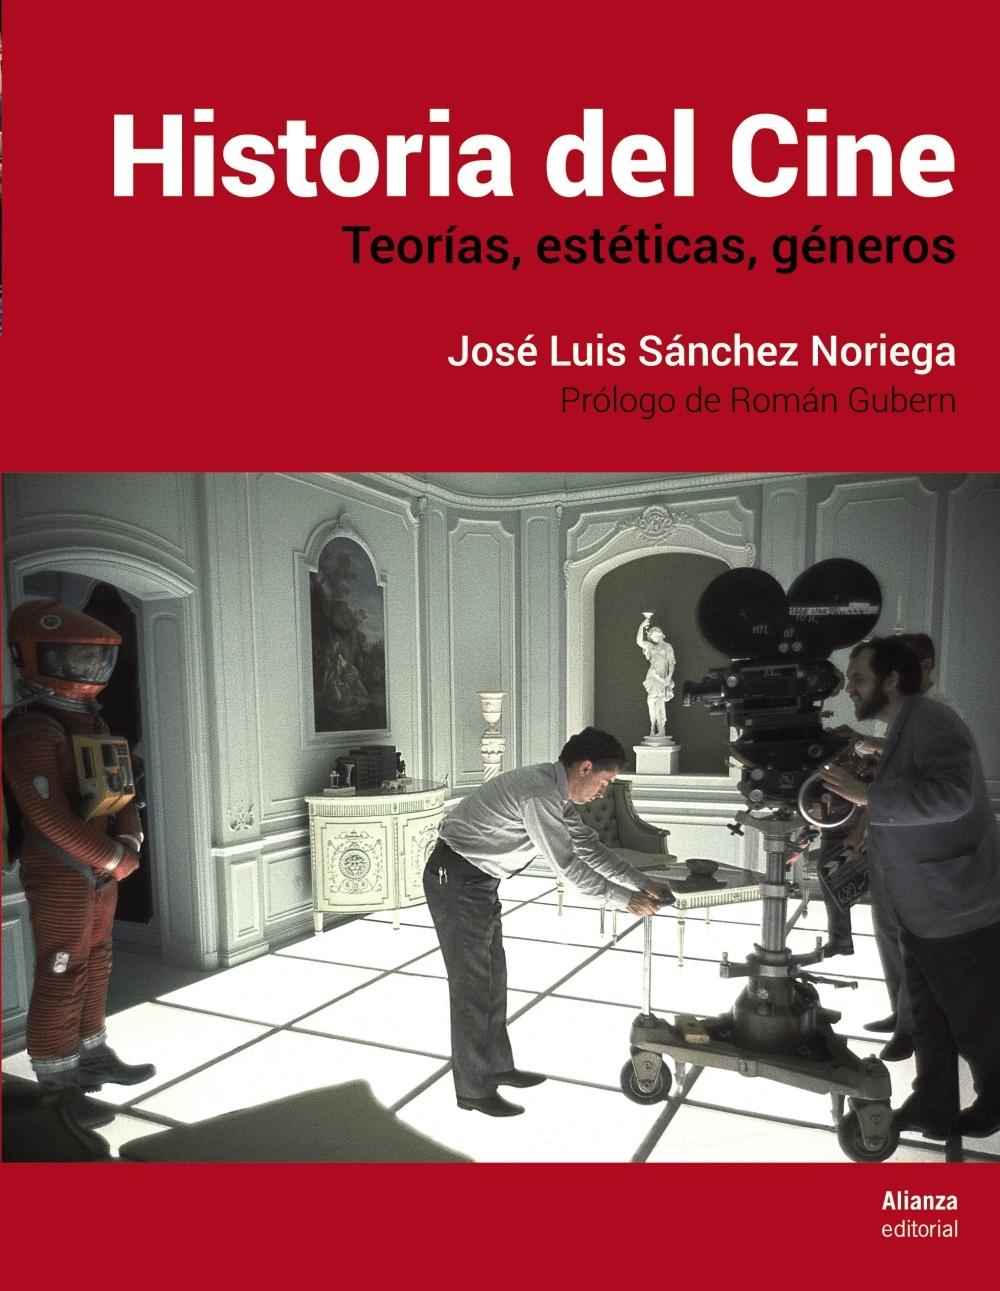 Historia del Cine "Teorías, estética, géneros". 